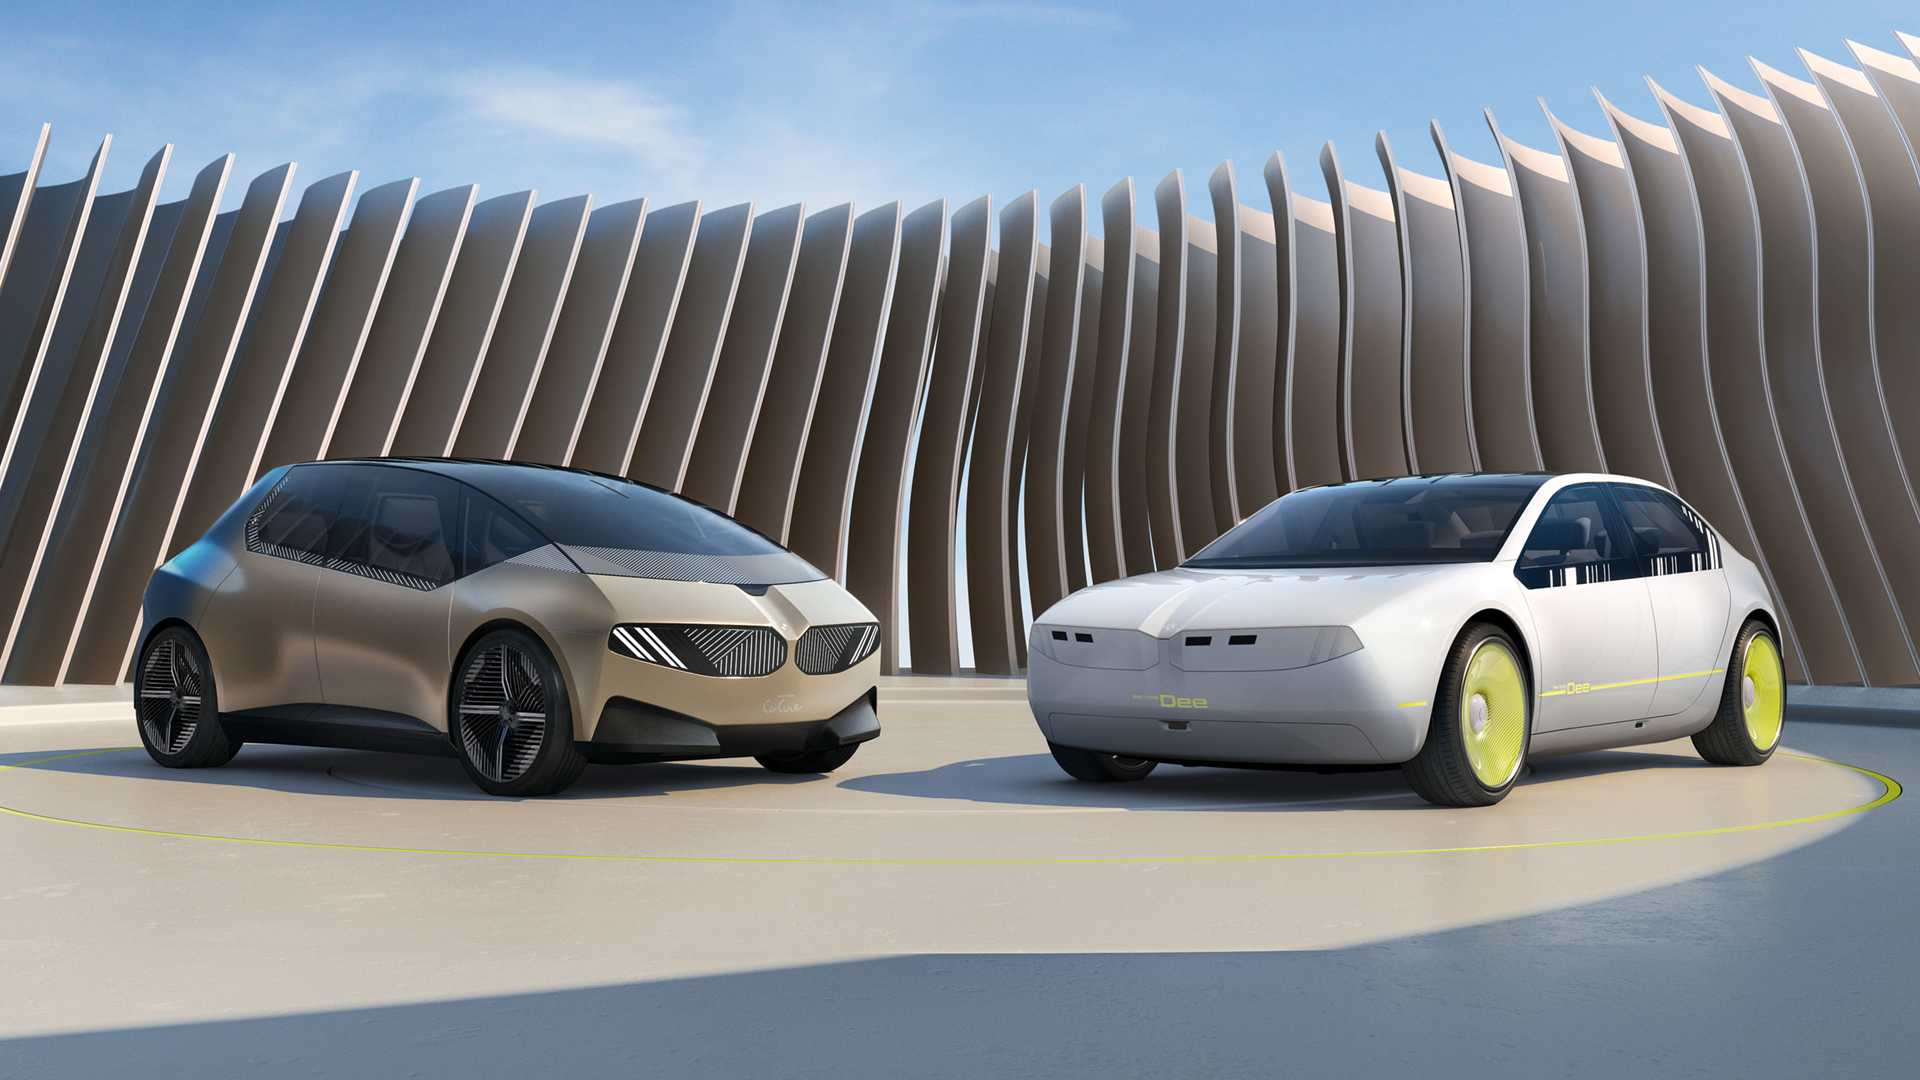 BMW desveló el prototipo camaleónico i Vision Dee, que puede cambiar el color de la carrocería y expresar emociones